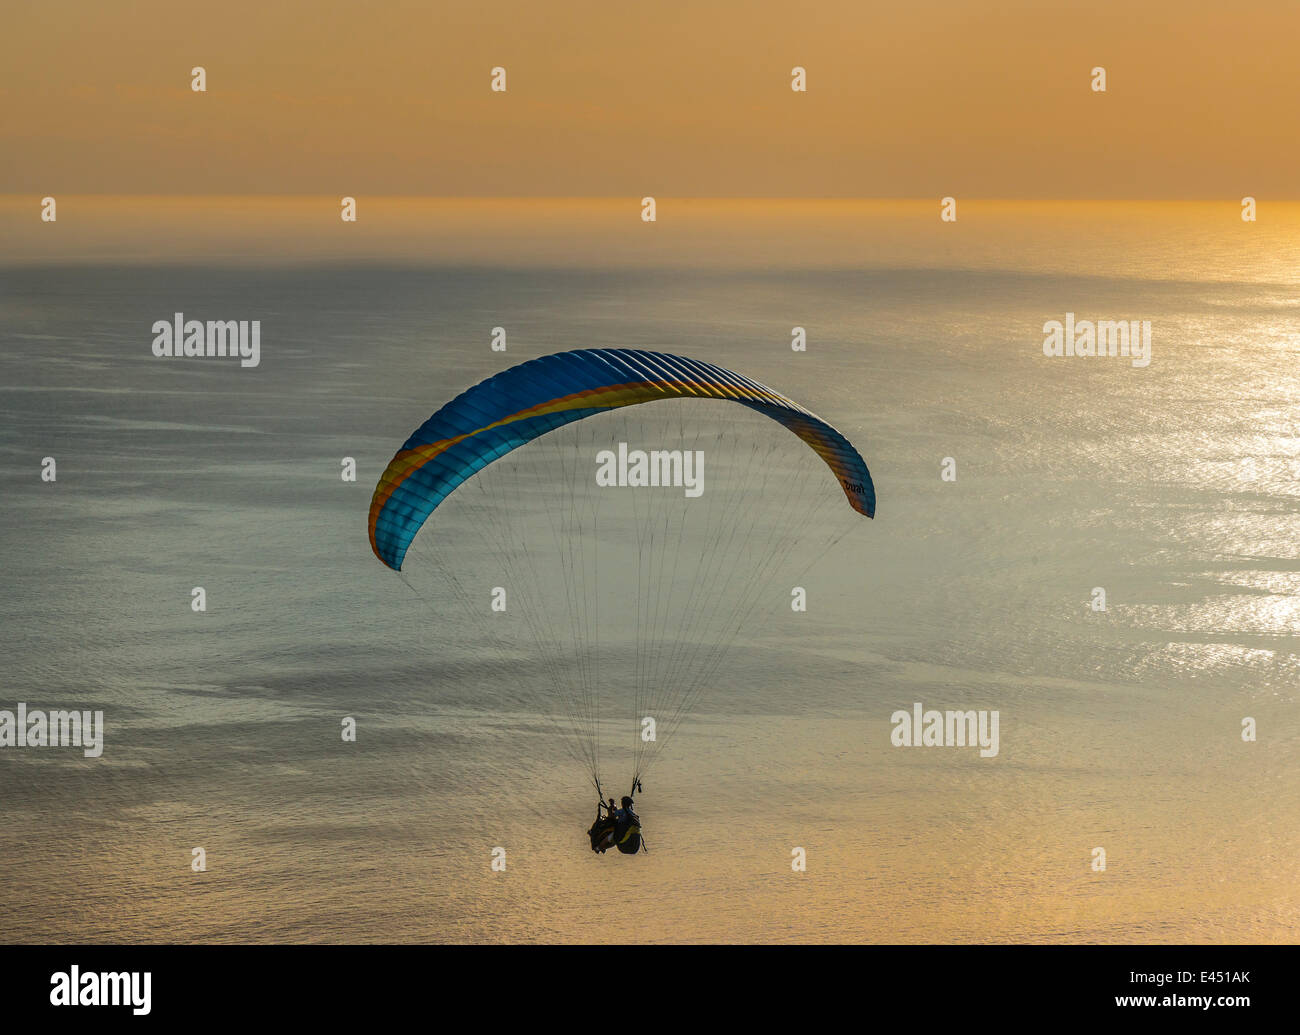 Gleitschirm Tandemsprung, Gleitschirm fliegen über das Meer bei Sonnenuntergang, Cape Town, Western Cape, South Africa Stockfoto